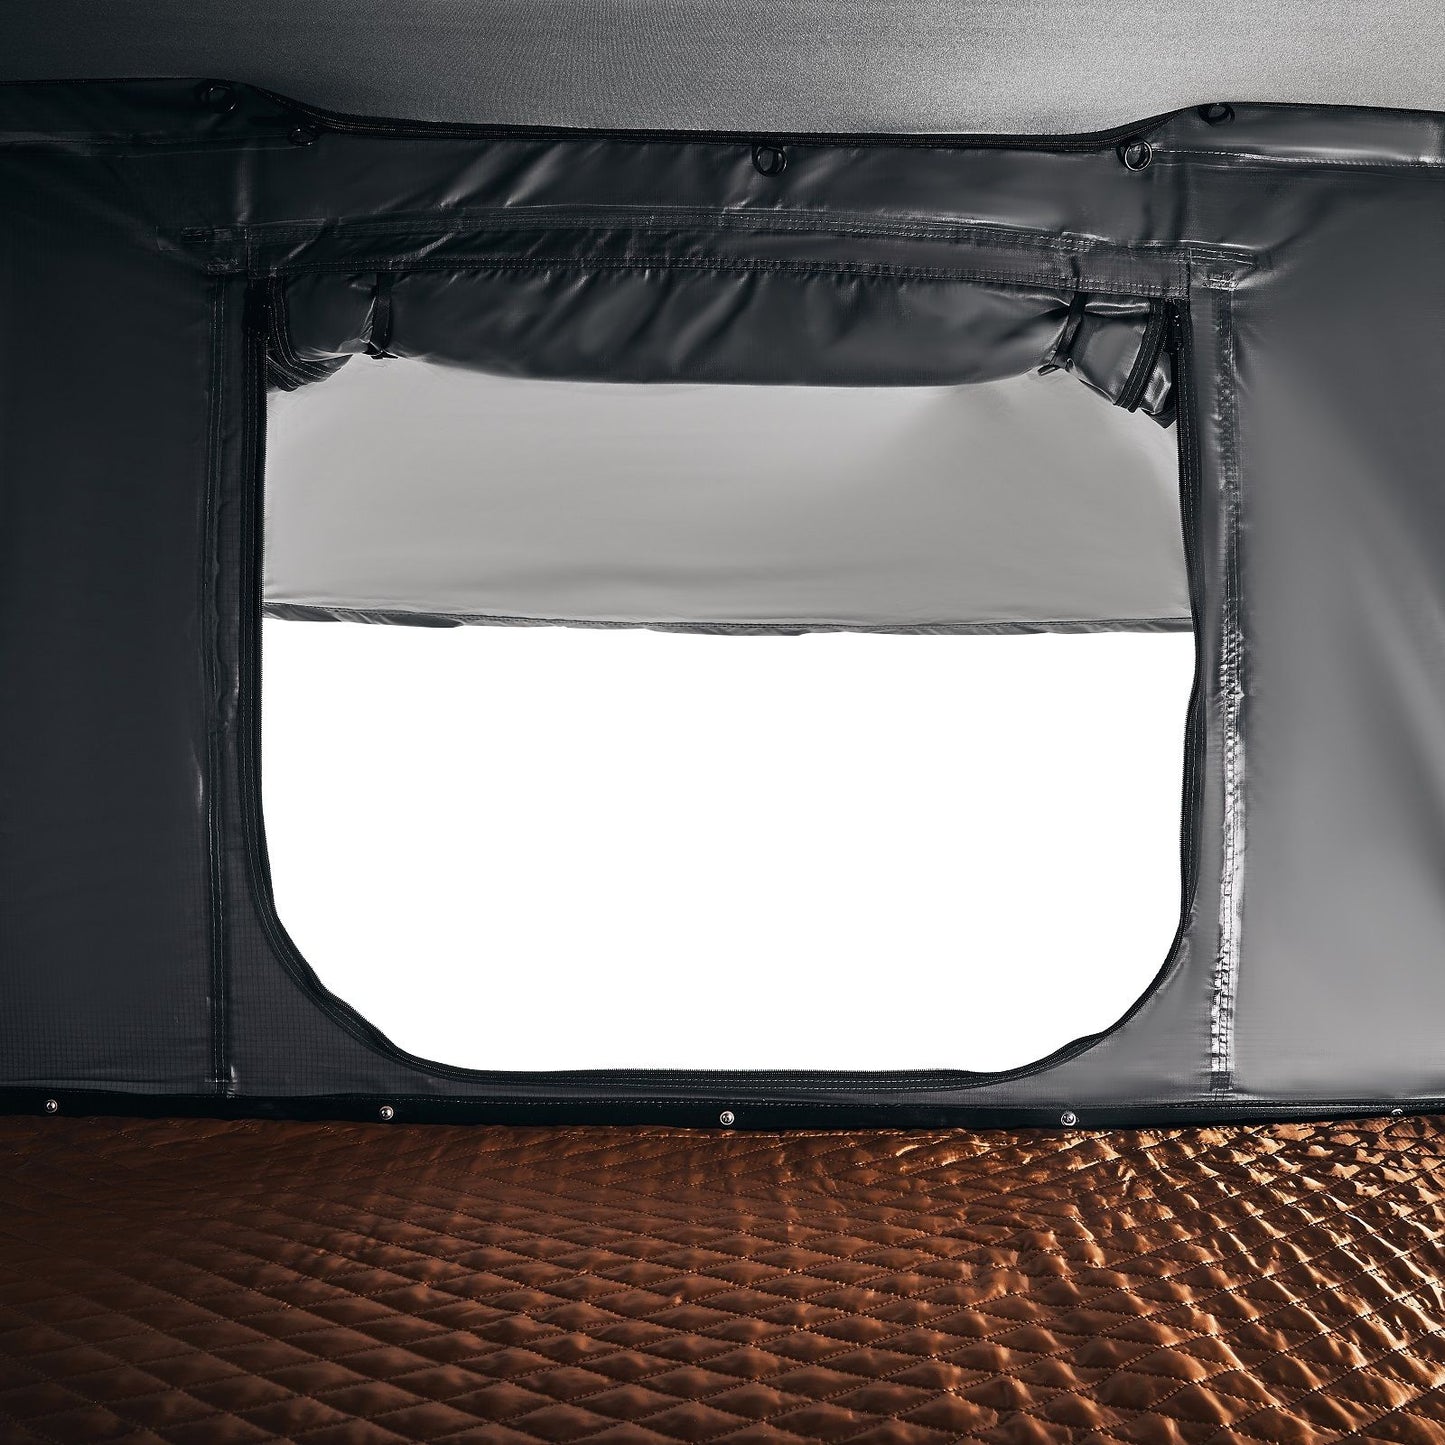 אוהל גג רכב חזק עם מעטפת קשיח יוטה 128 ס"מ (אוטומטי)